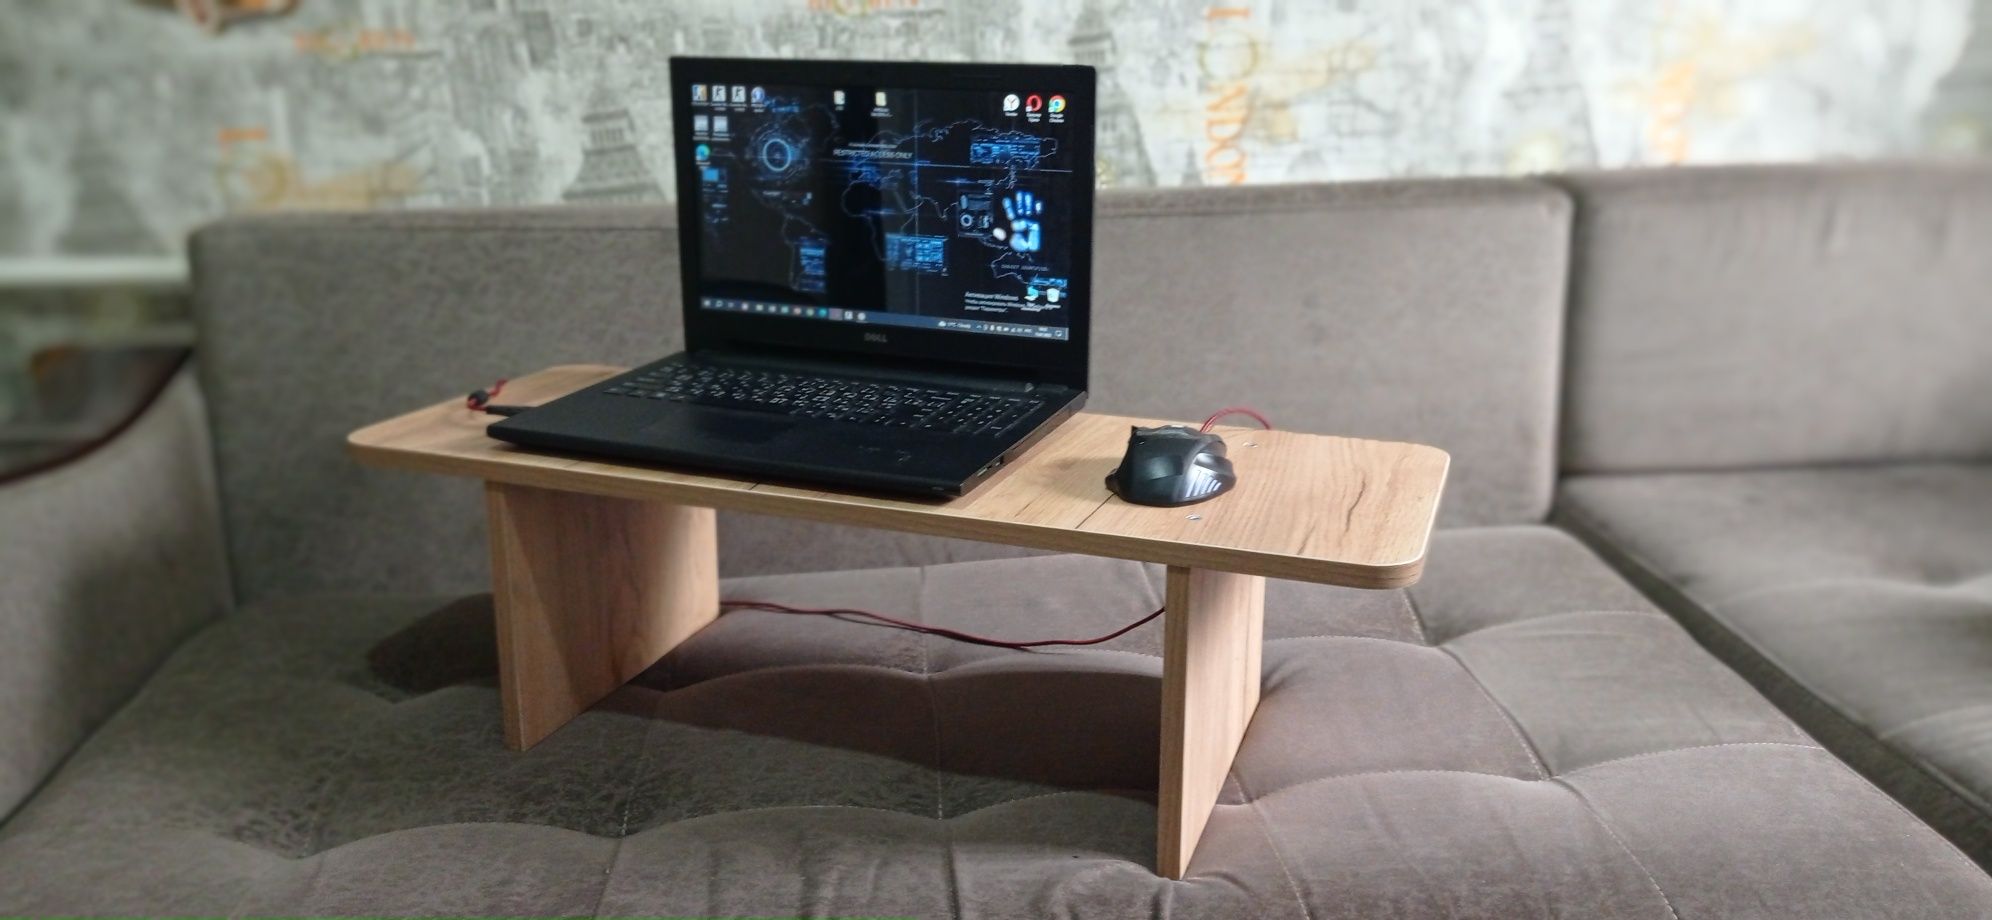 Продам новые переносные мини столы для ноутбука